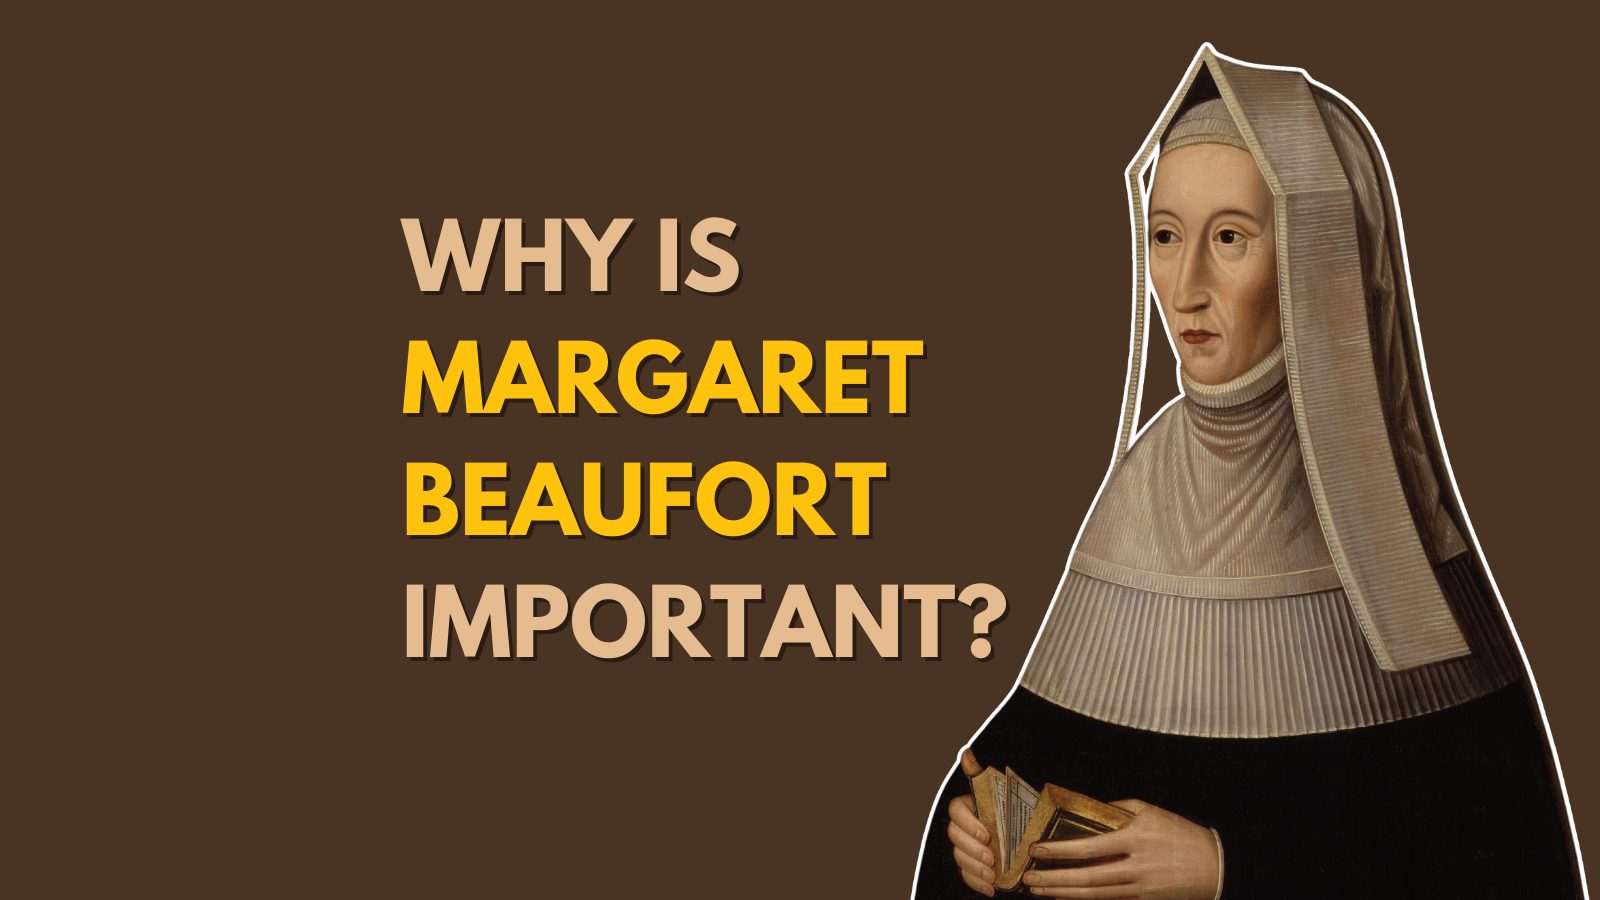 Margaret Beaufort